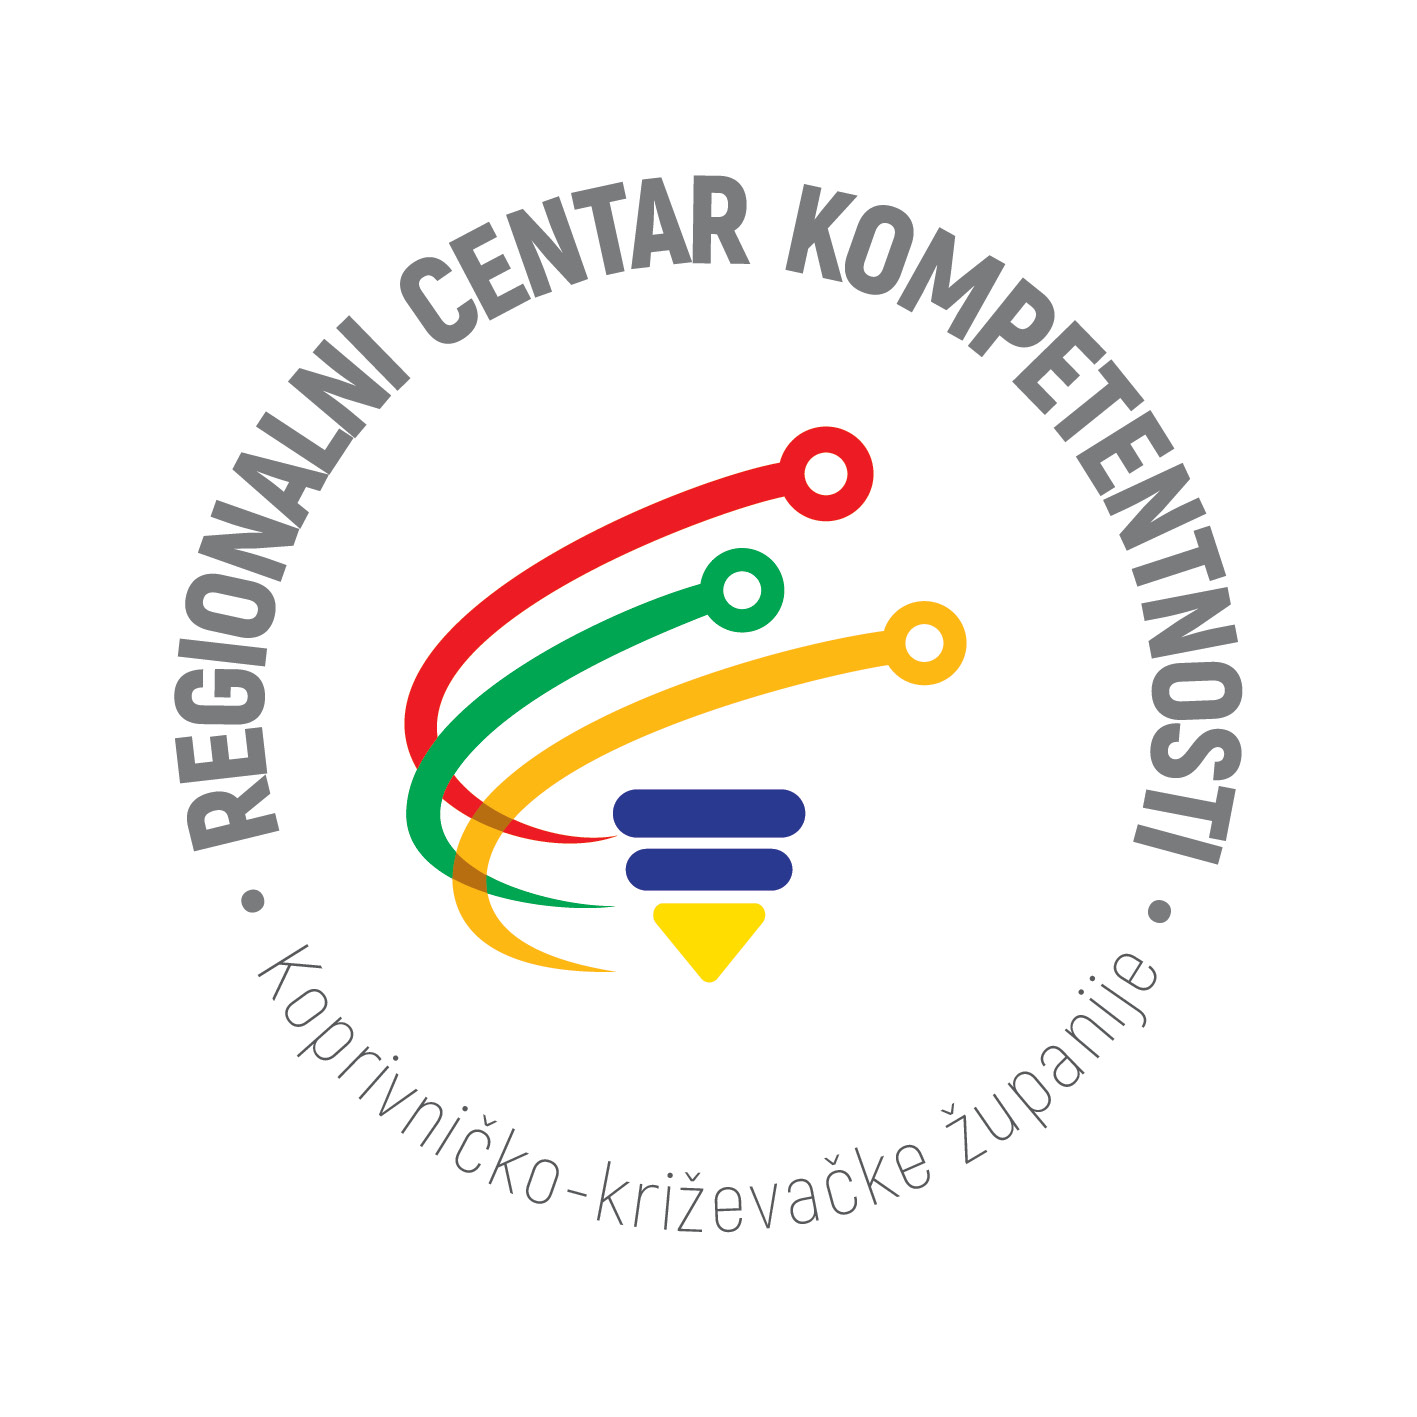 Logotip projekta Centar kompetentnosti u Koprivničko-križevačkoj županiji